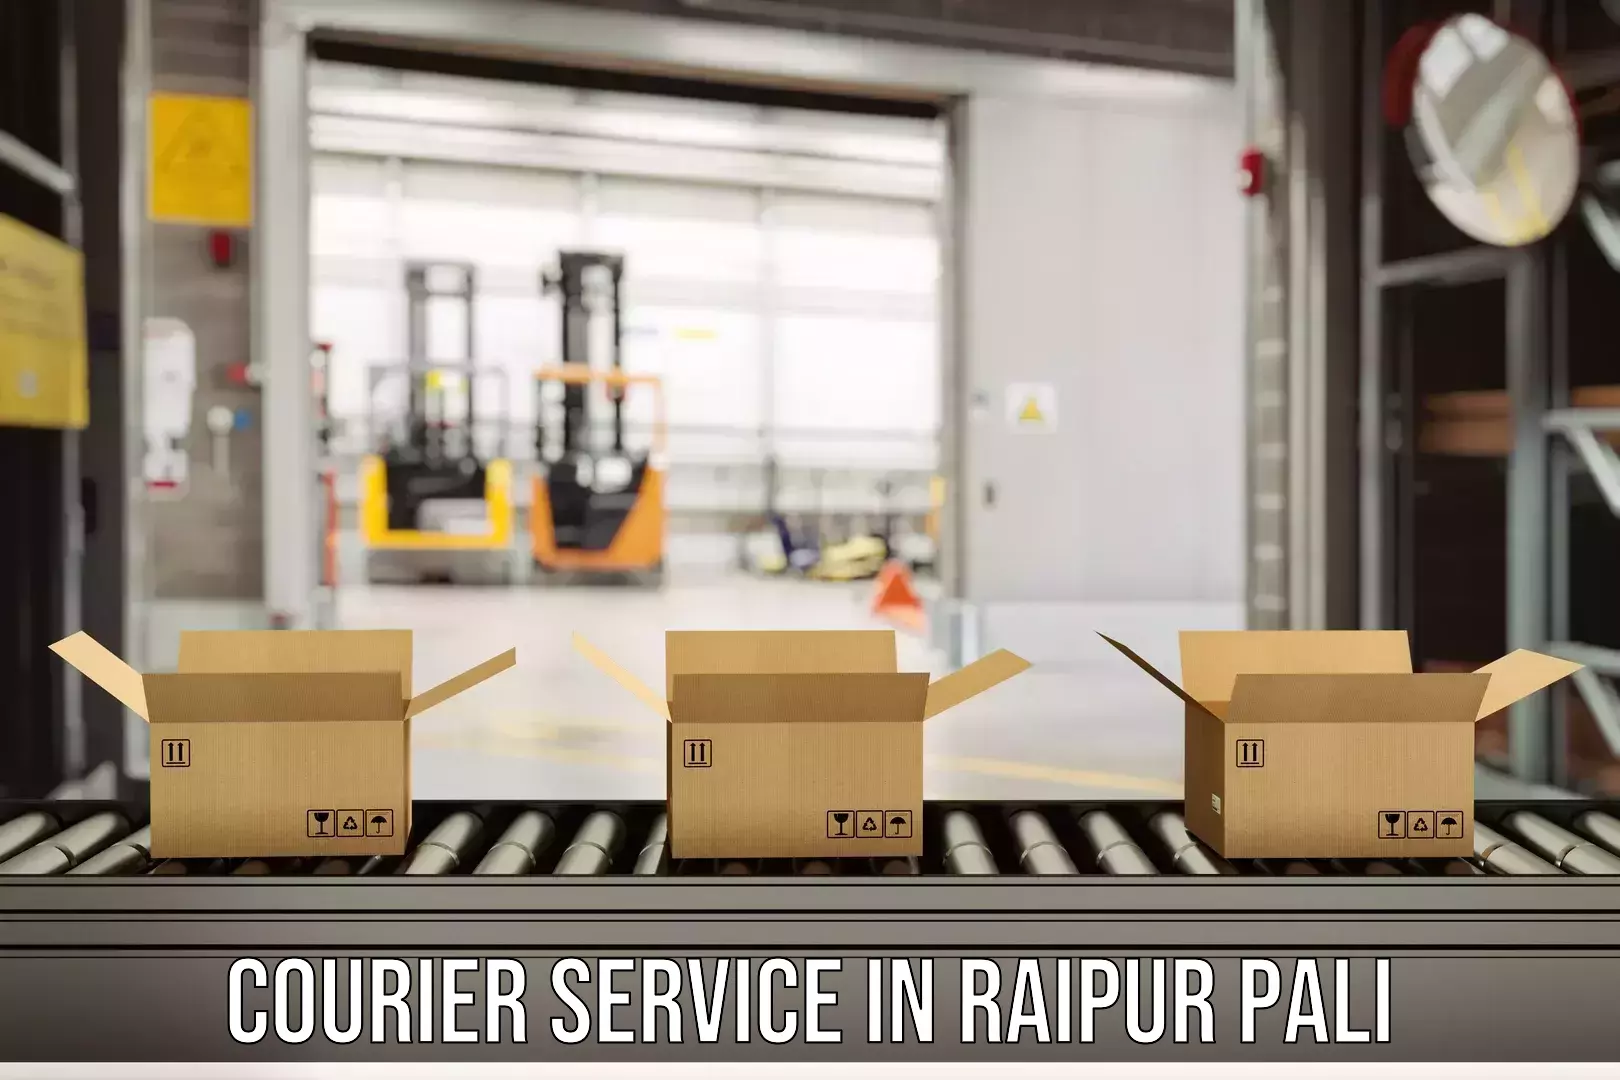 Express logistics in Raipur Pali